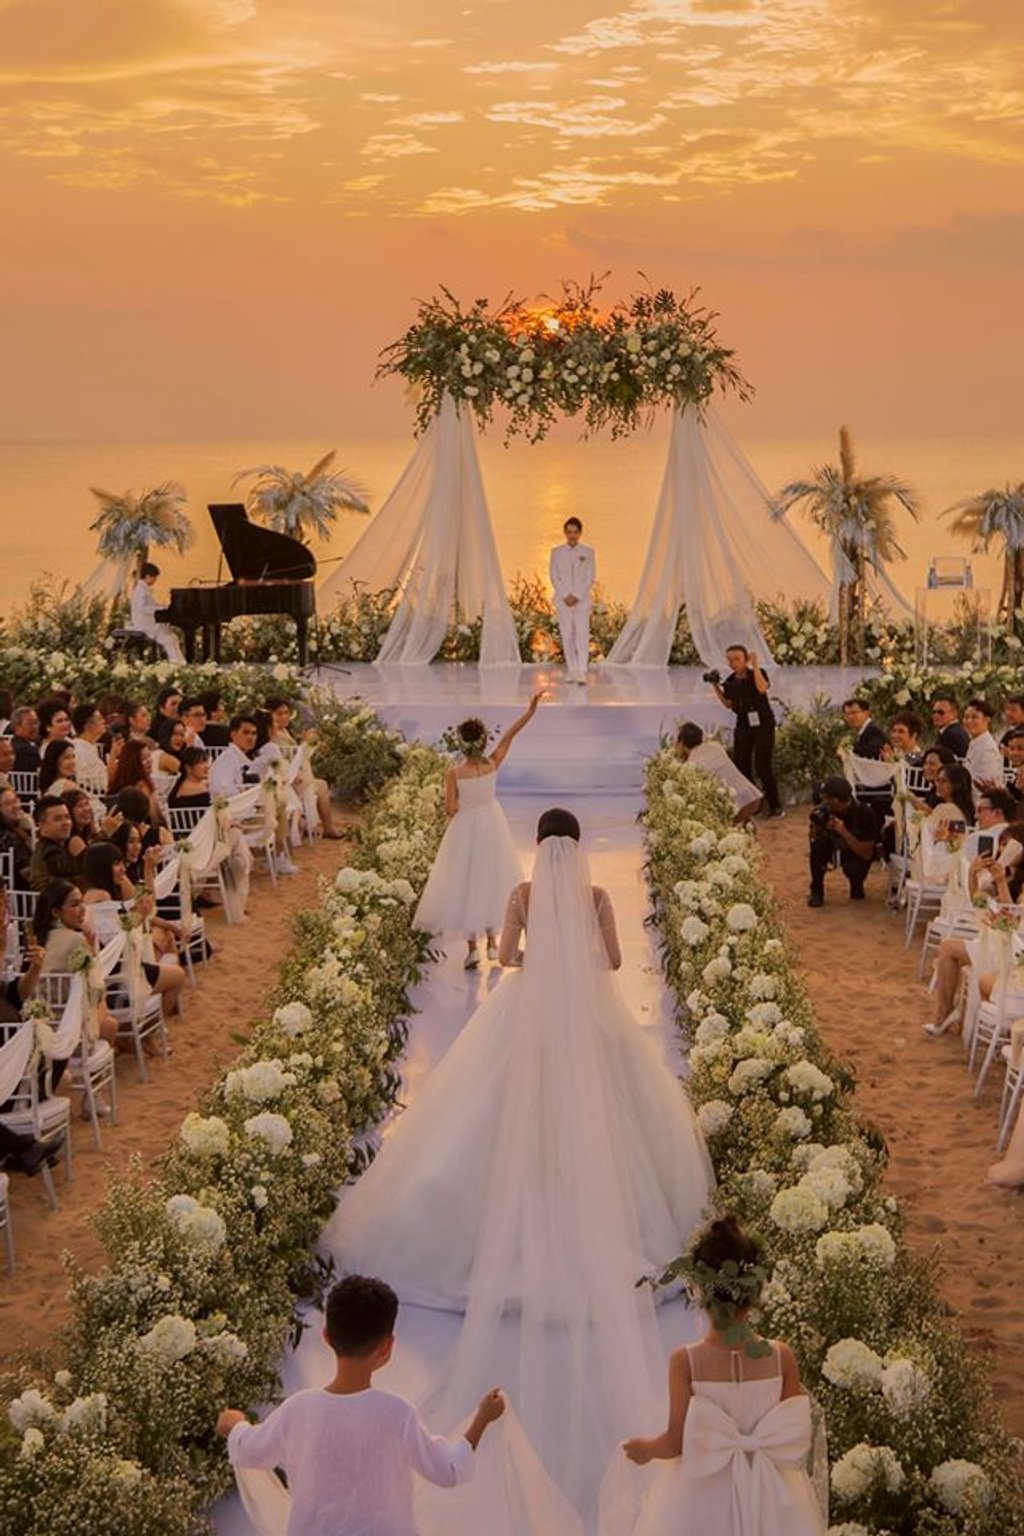 Đám cưới của Đông Nhi và Ông Cao Thắng được tổ chức ở Vinpearl Phú Quốc vào một chiều hoàng hôn lãng mạn.